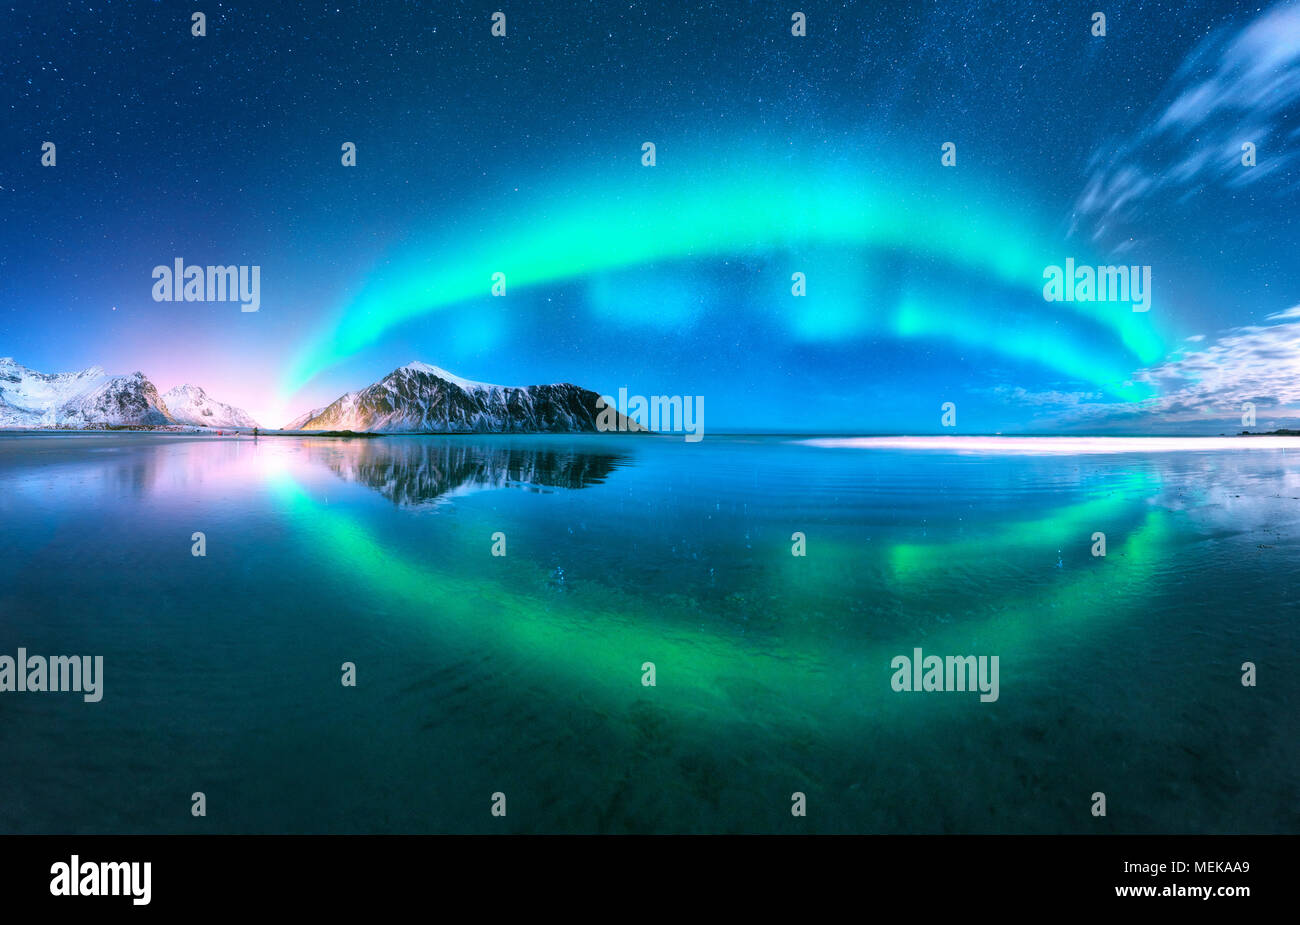 Aurora spiegelt sich im Wasser. Nordlicht in Lofoten Inseln, Norwegen. Blauer Himmel mit Polarlichter. Nacht Landschaft mit Aurora, Meer mit Sky reflectio Stockfoto